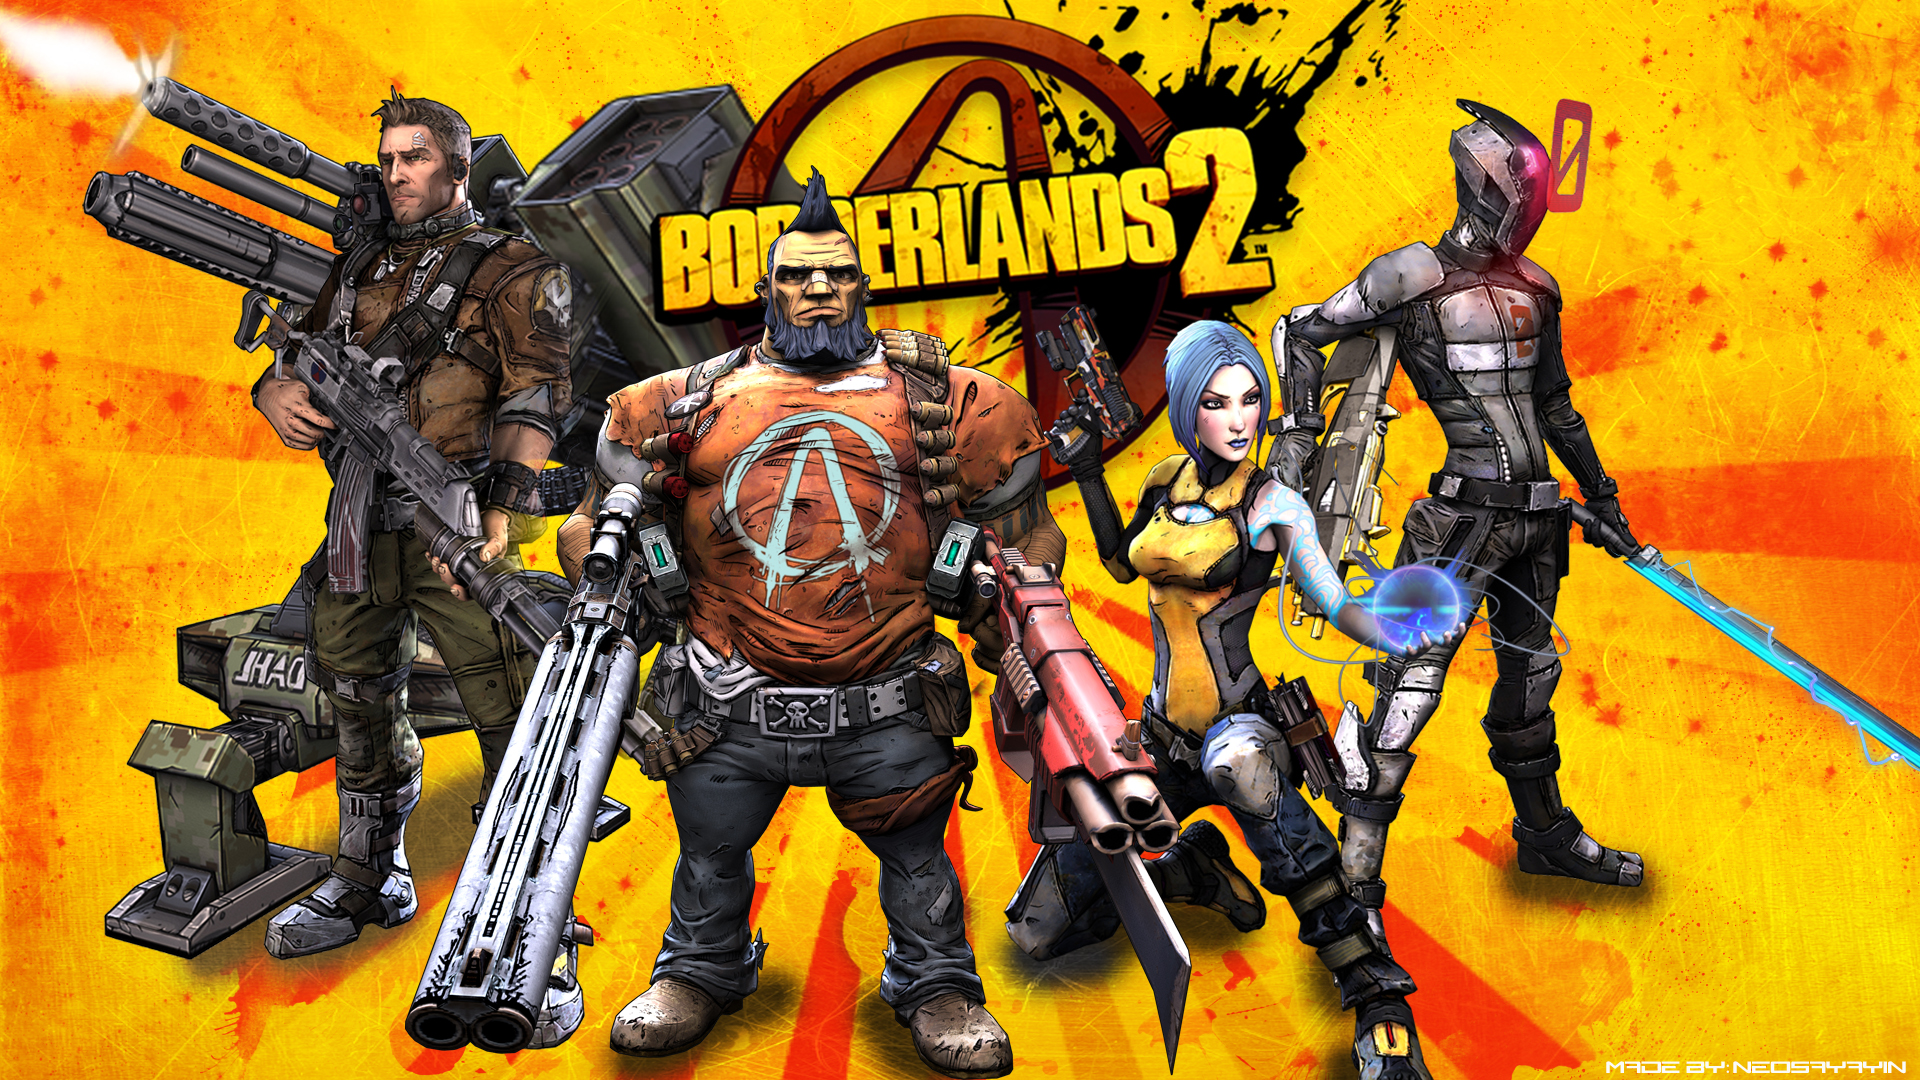 Download mobile wallpaper Borderlands 2, Borderlands, Video Game for free.